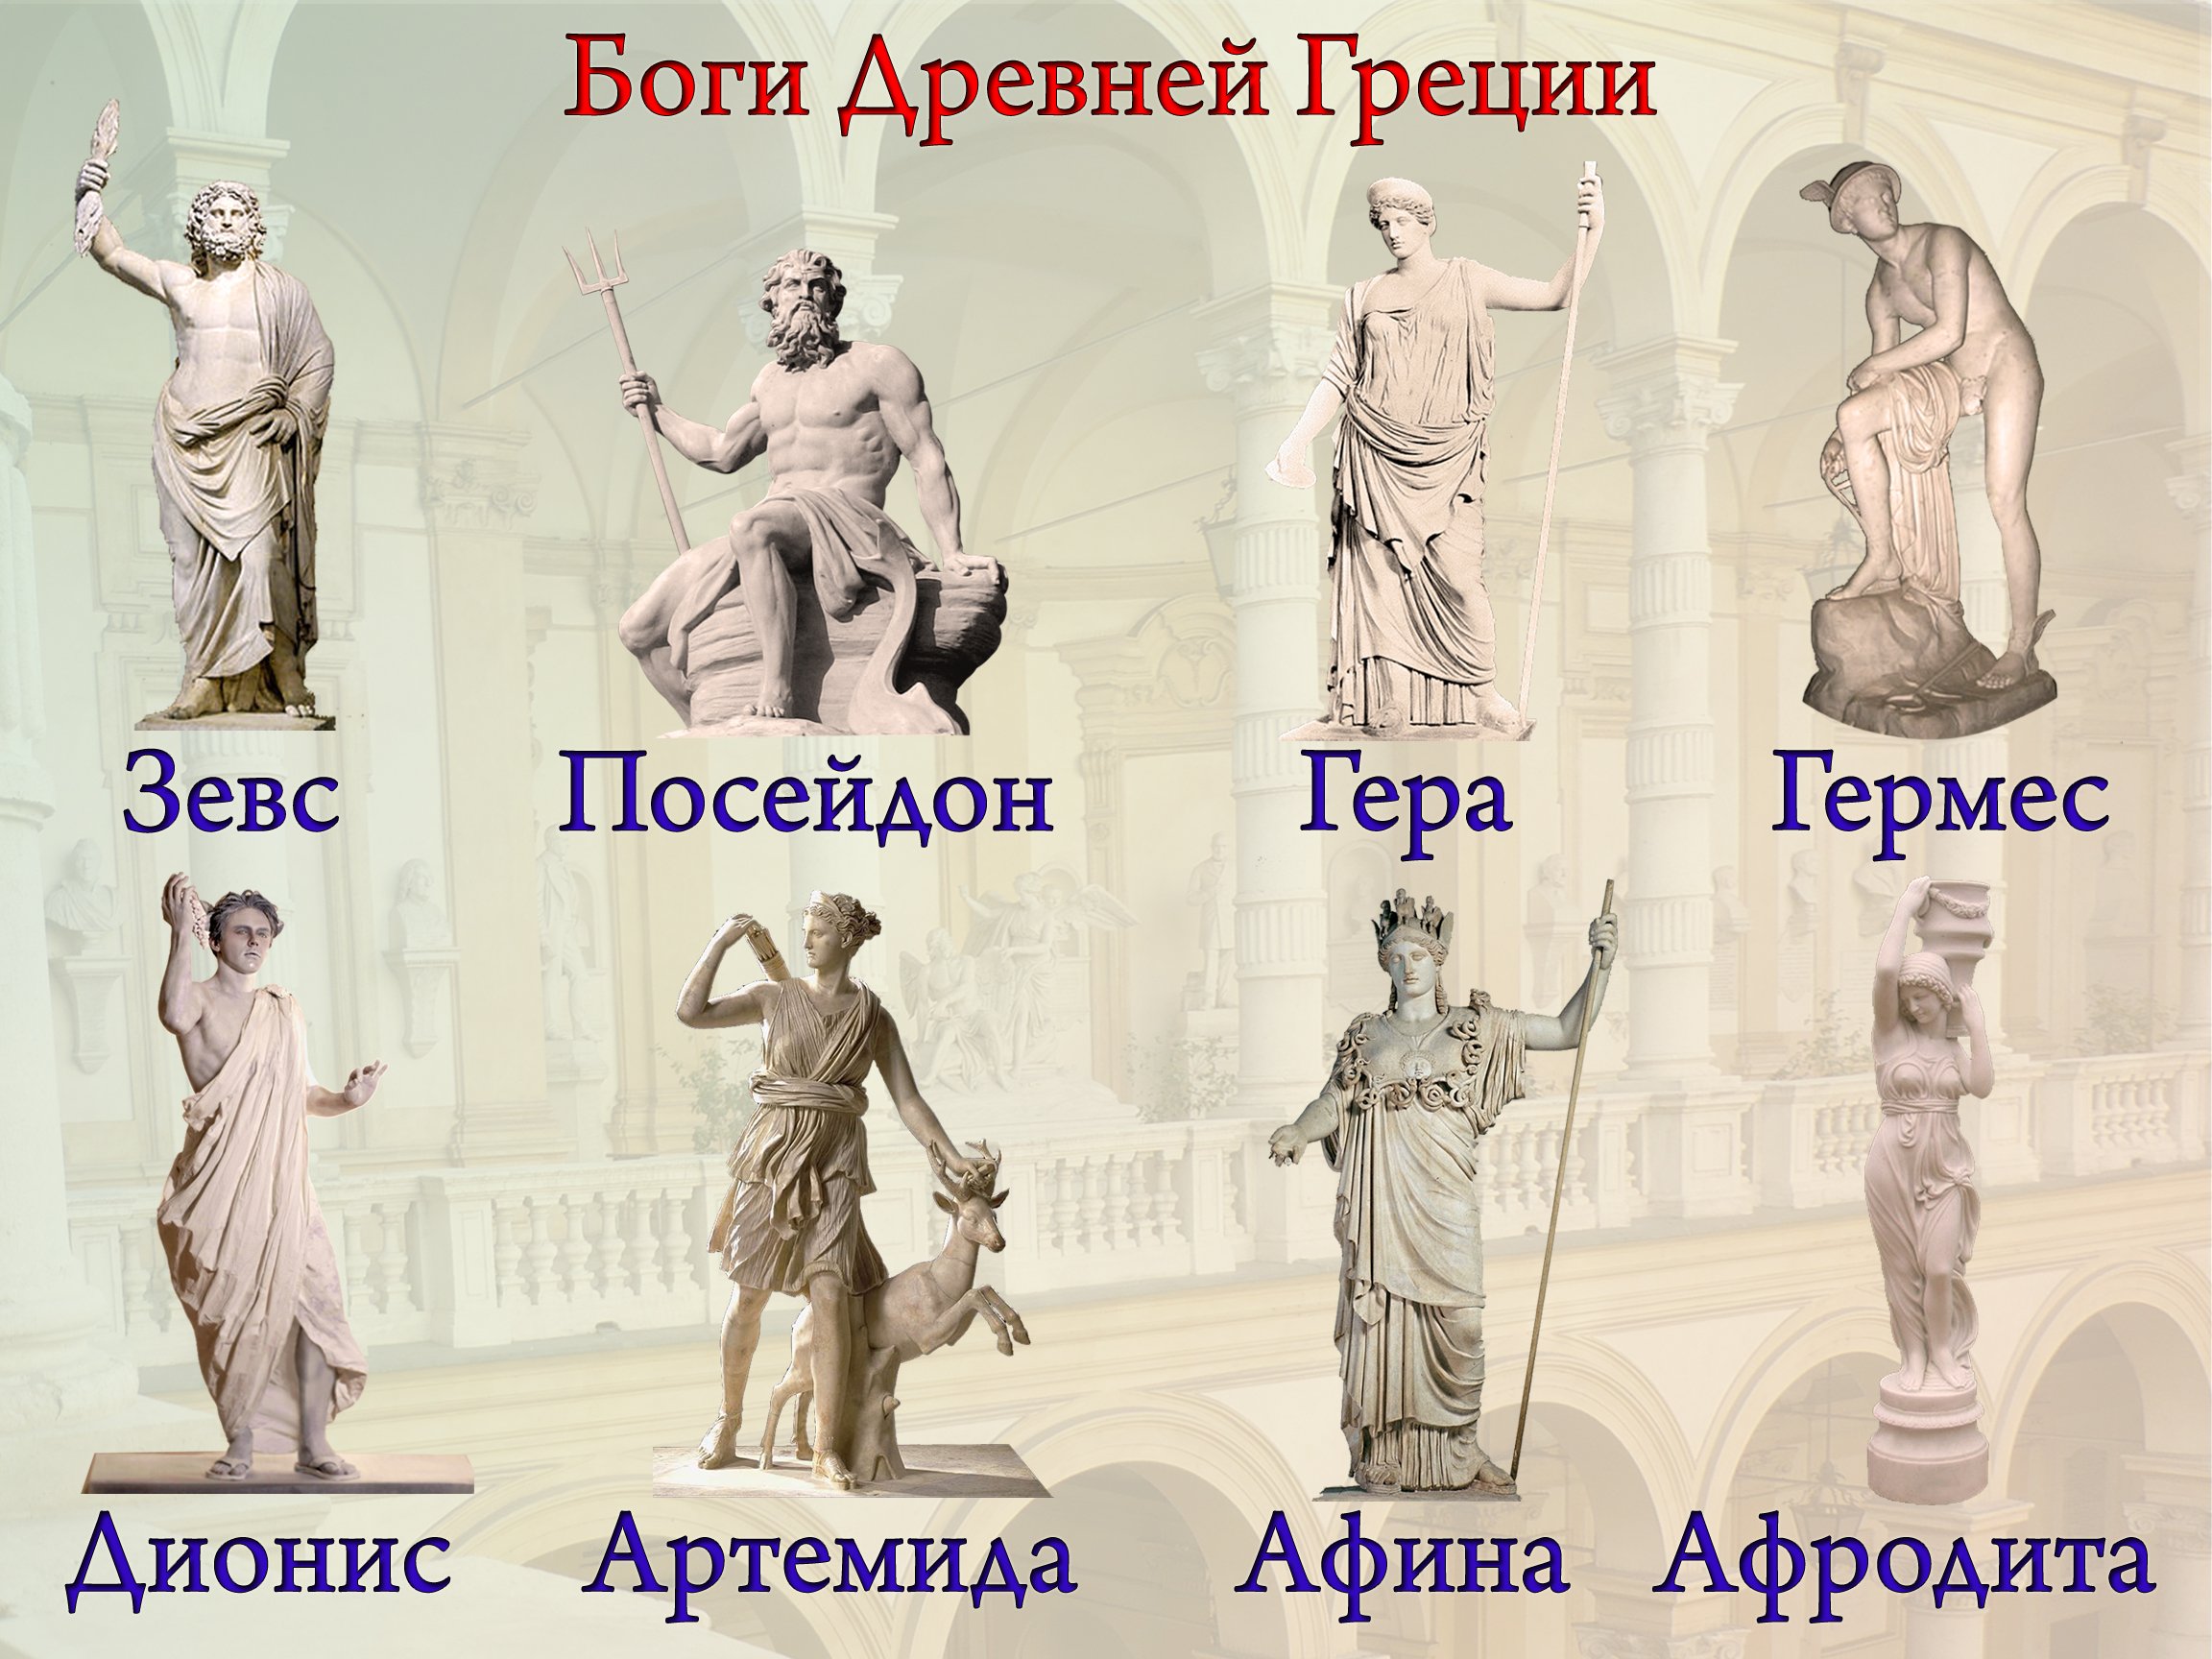 Богини греции имена - фото.